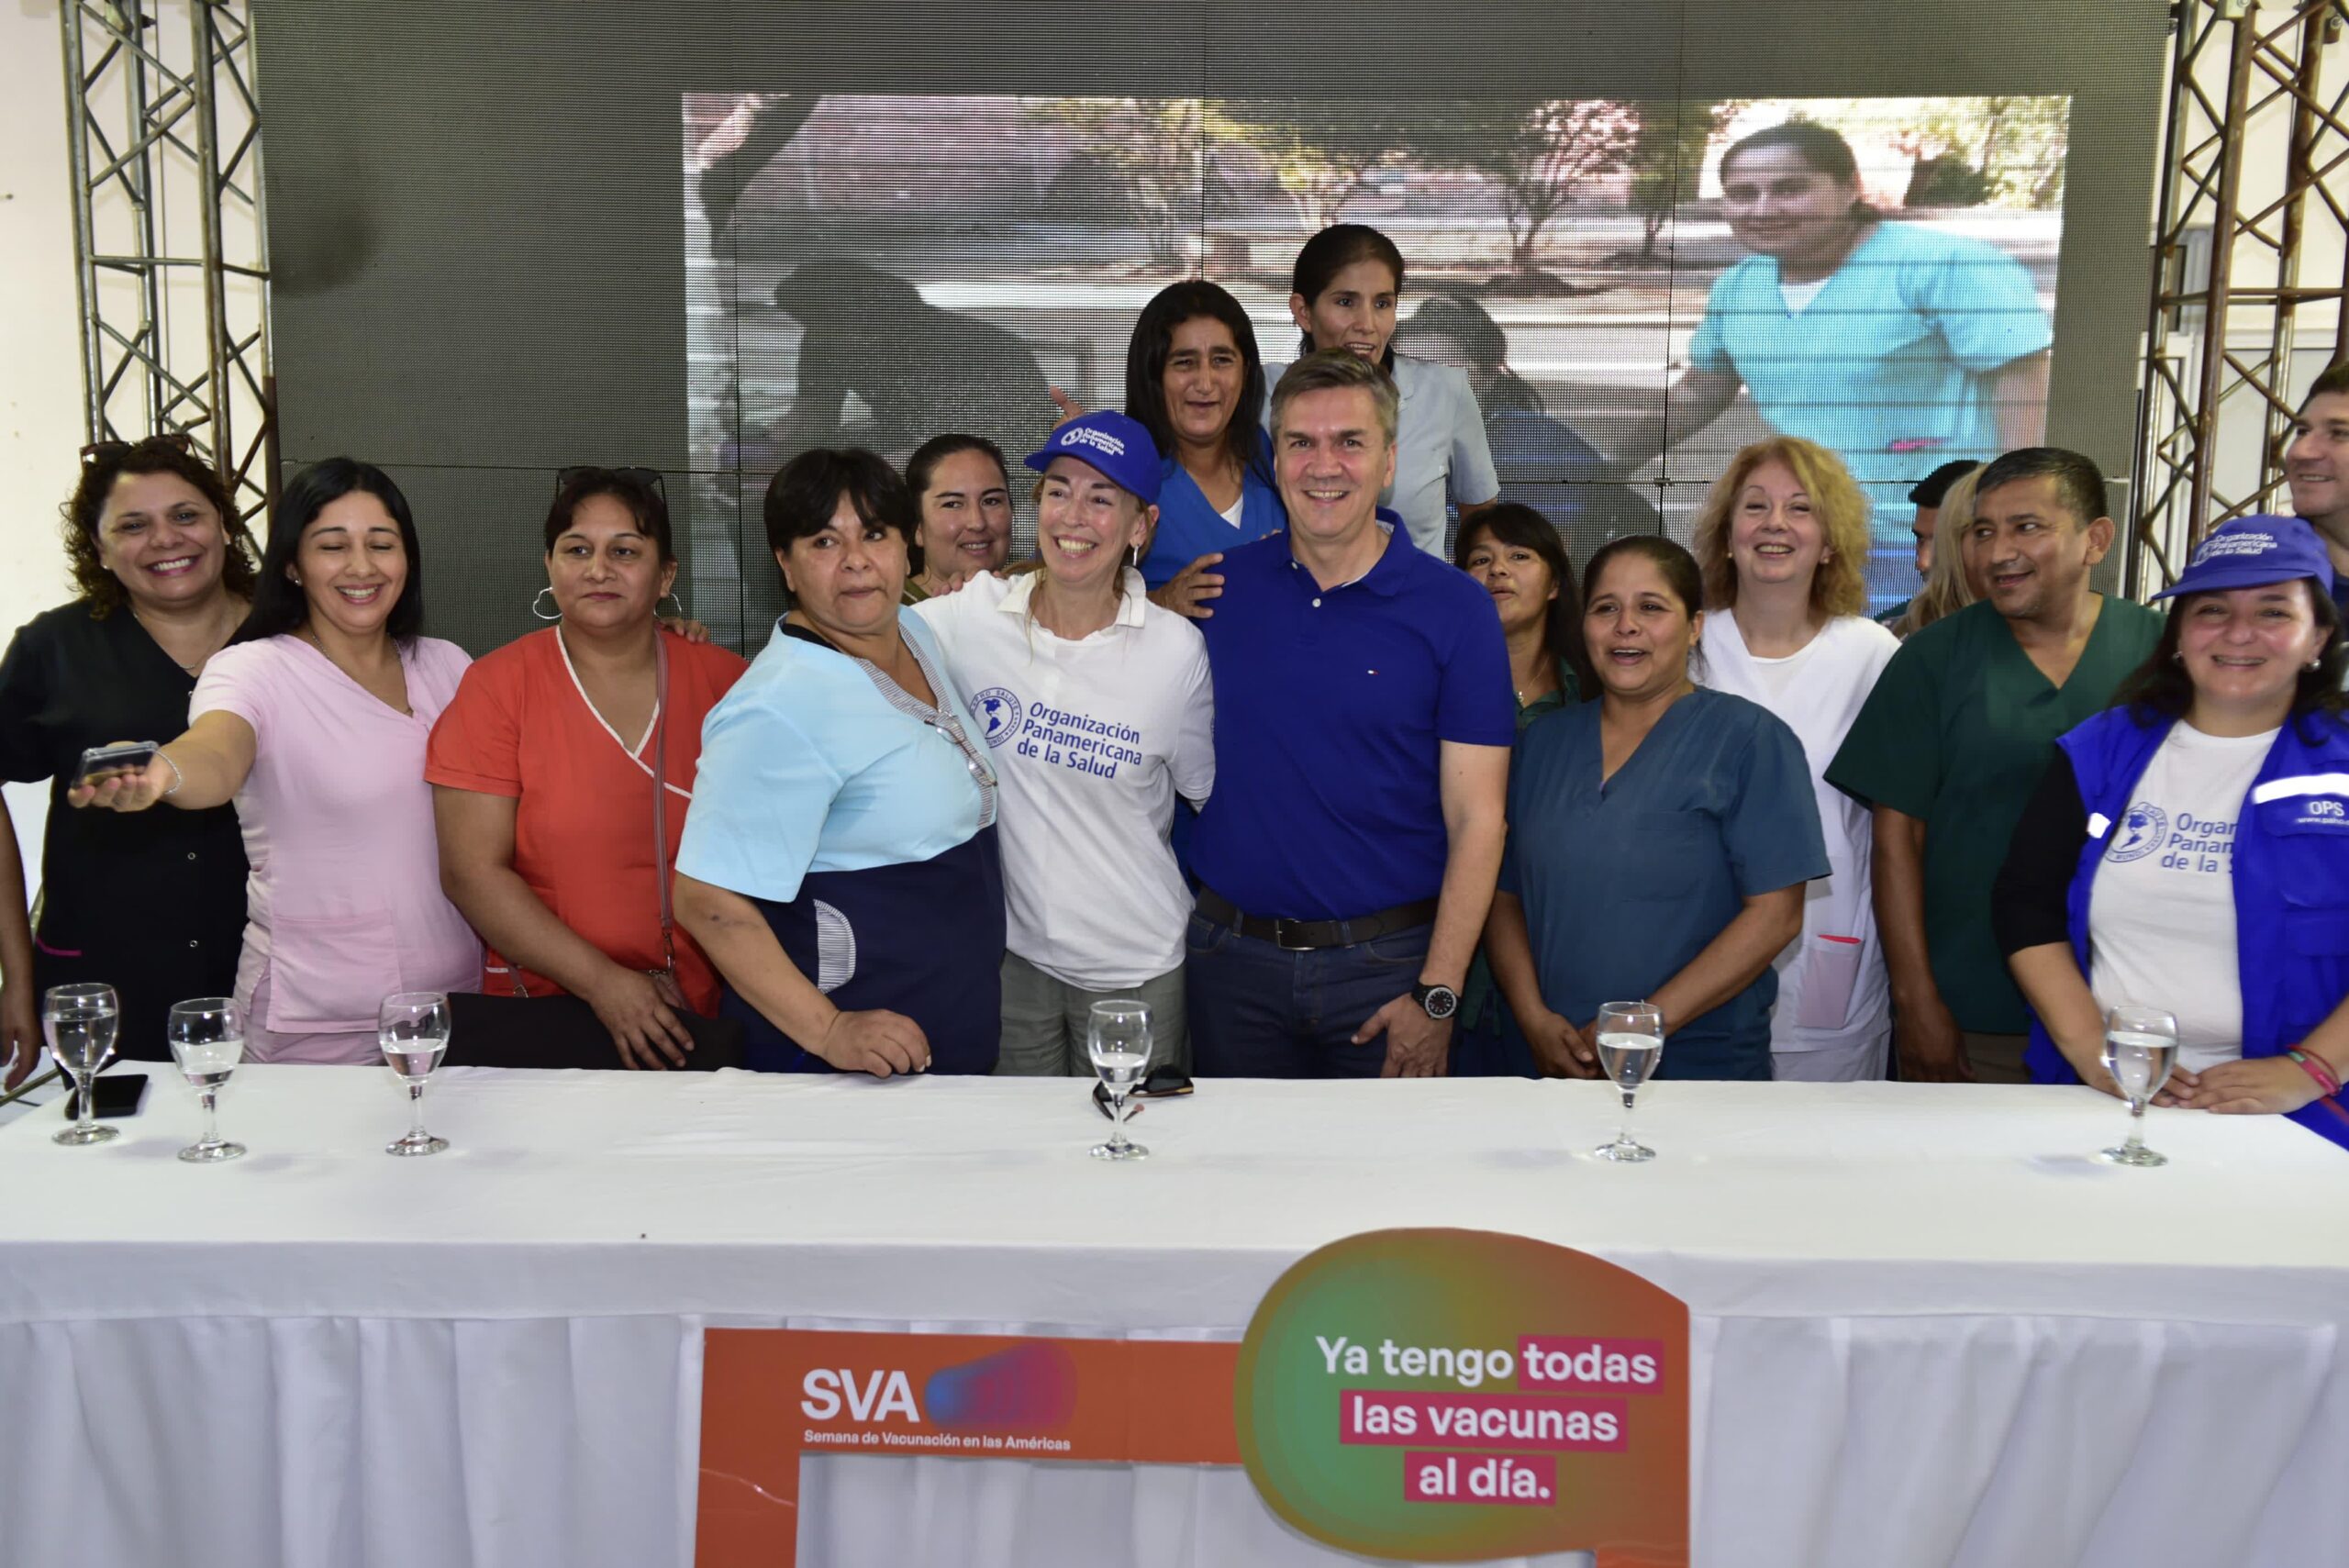 Miraflores: El Gobernador del Chaco acompañó la jornada de cierre de la Campaña de Vacunación en las Américas